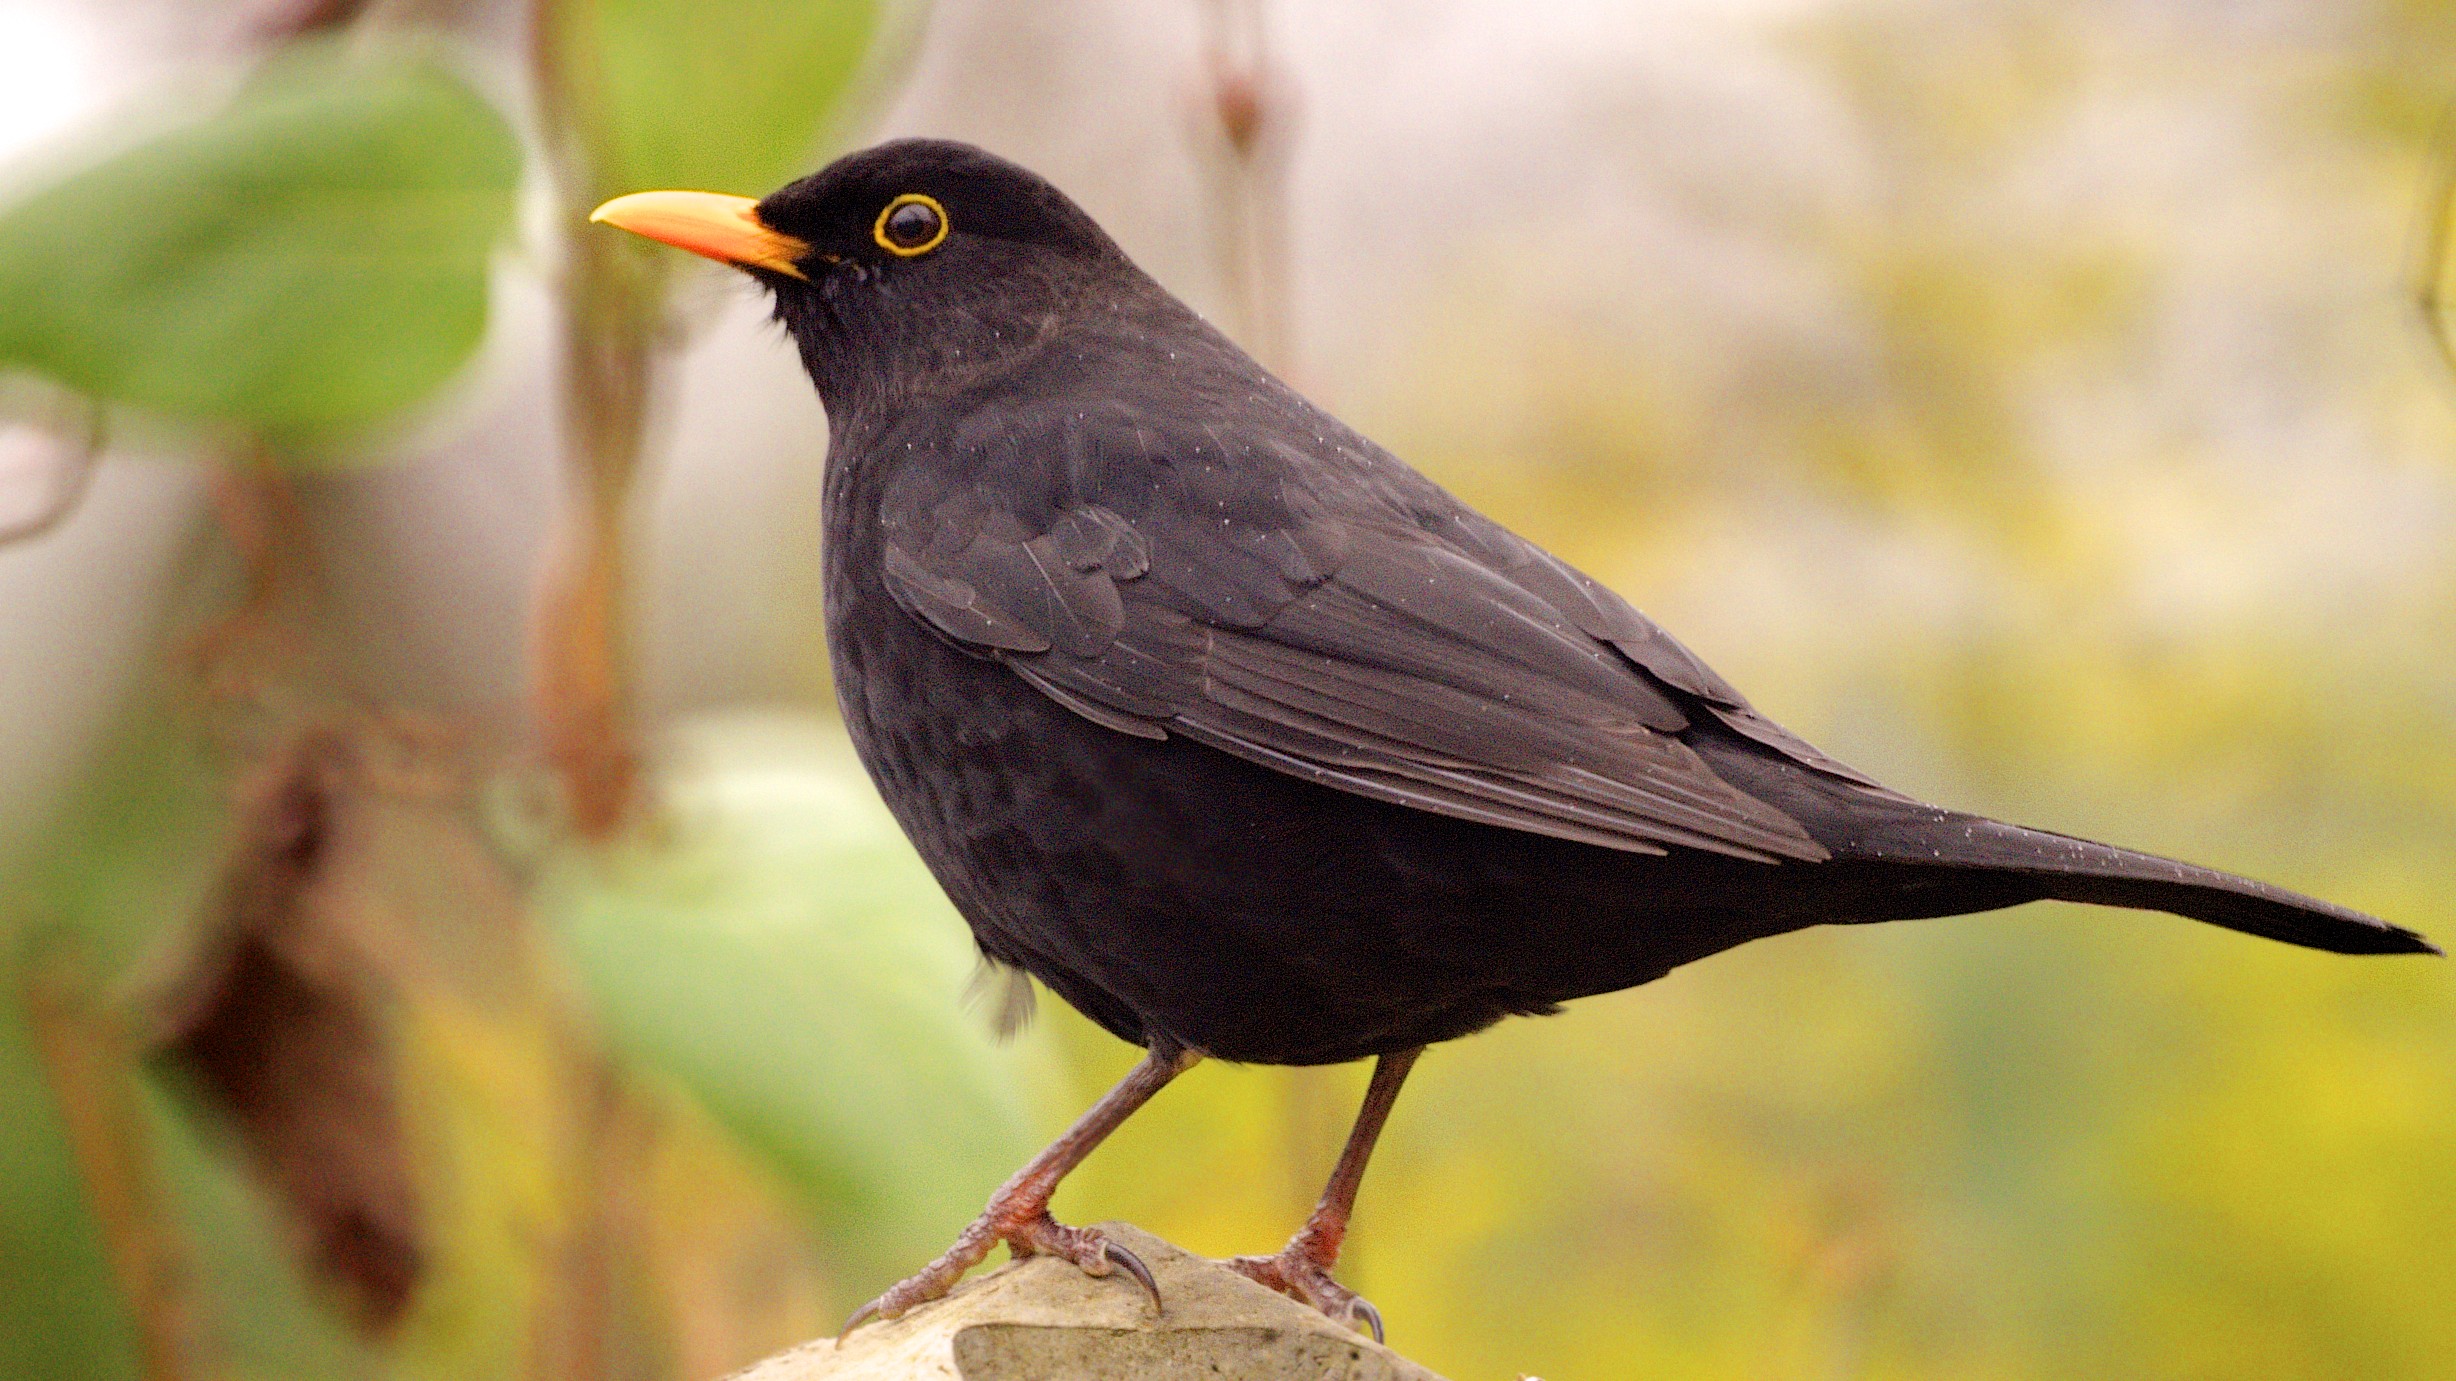 File:Blackbird (male) in my garden (8407766585).jpg - Wikimedia Commons